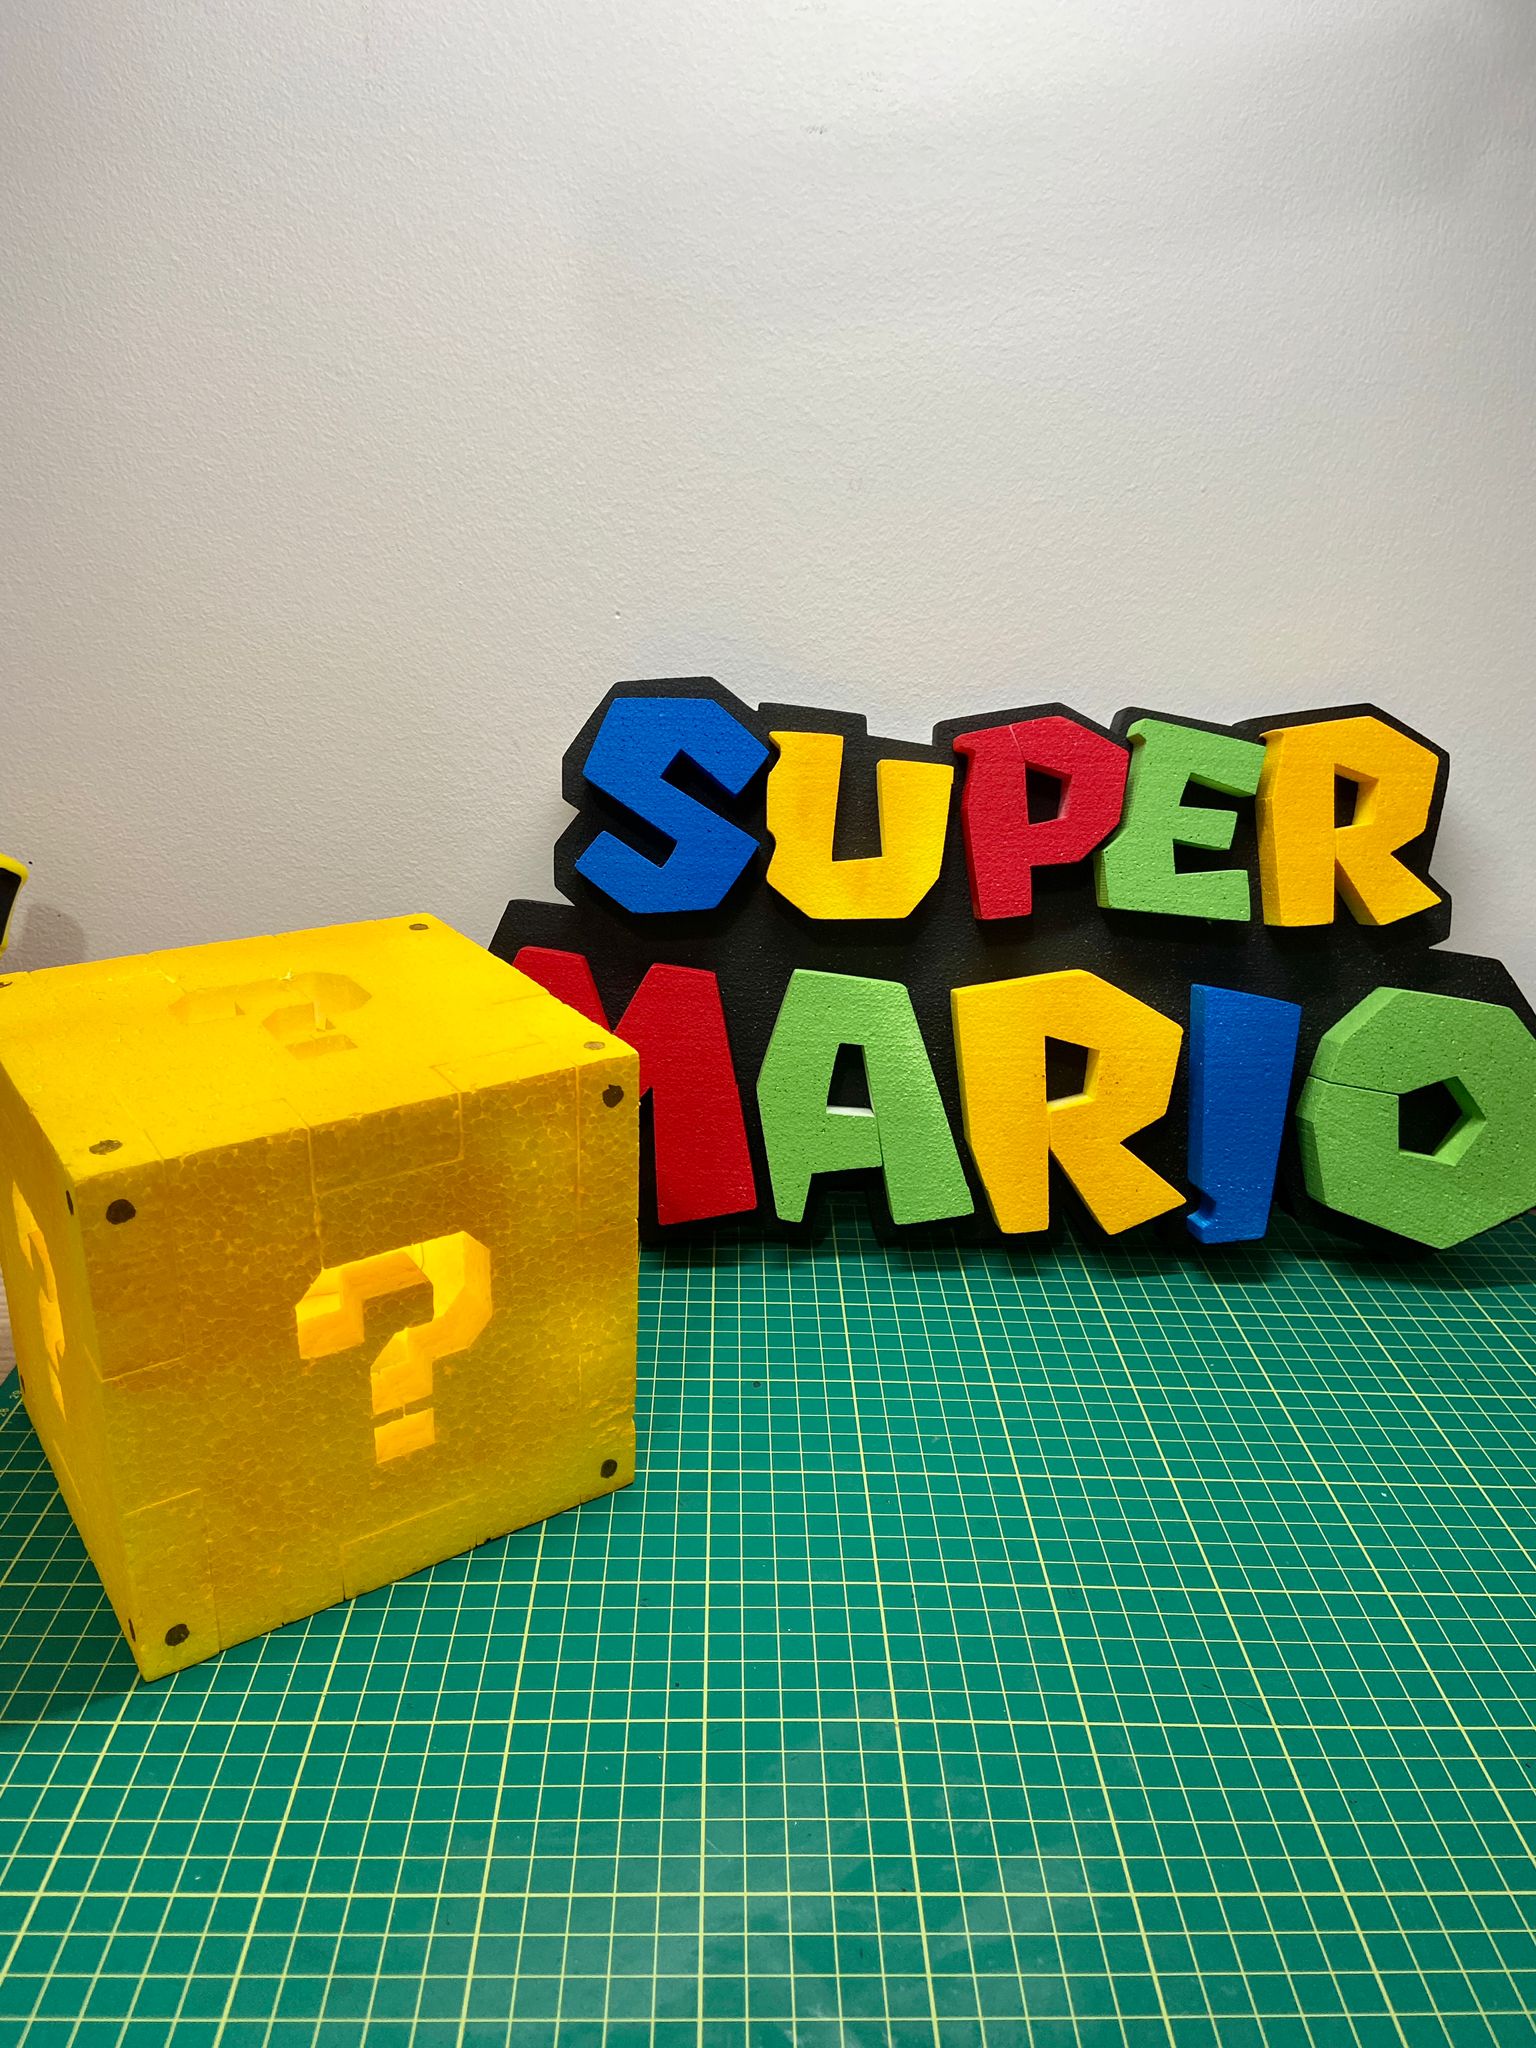 Scritta Super Mario e cubo